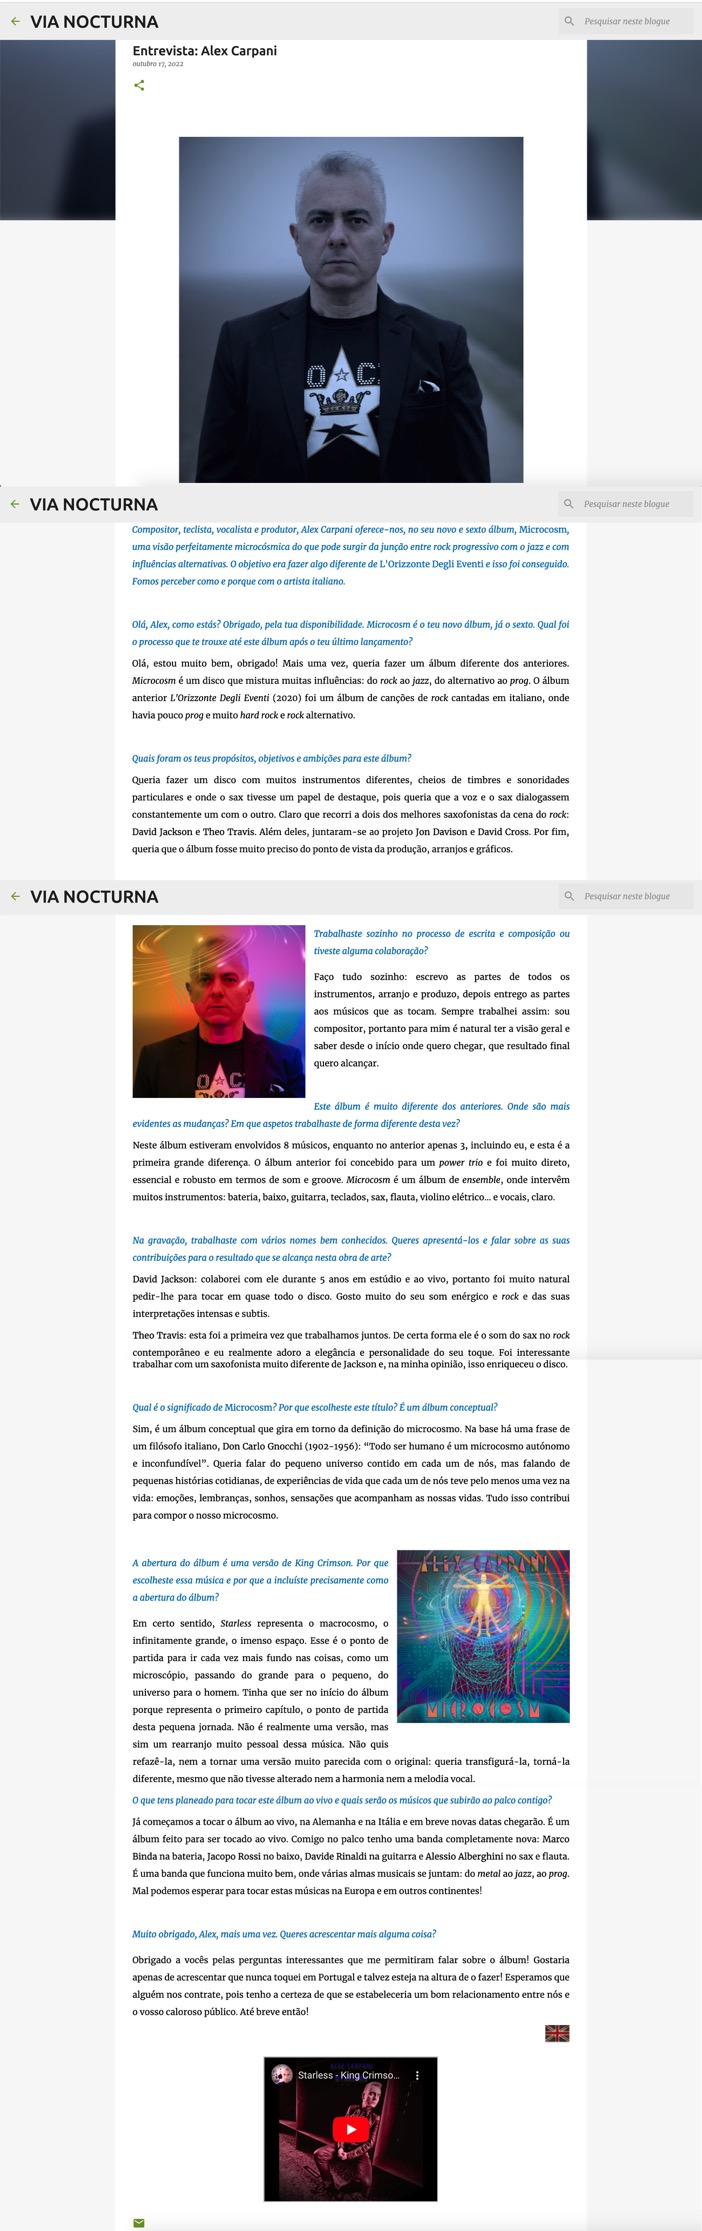 ViaNocturna-interv-MCSM